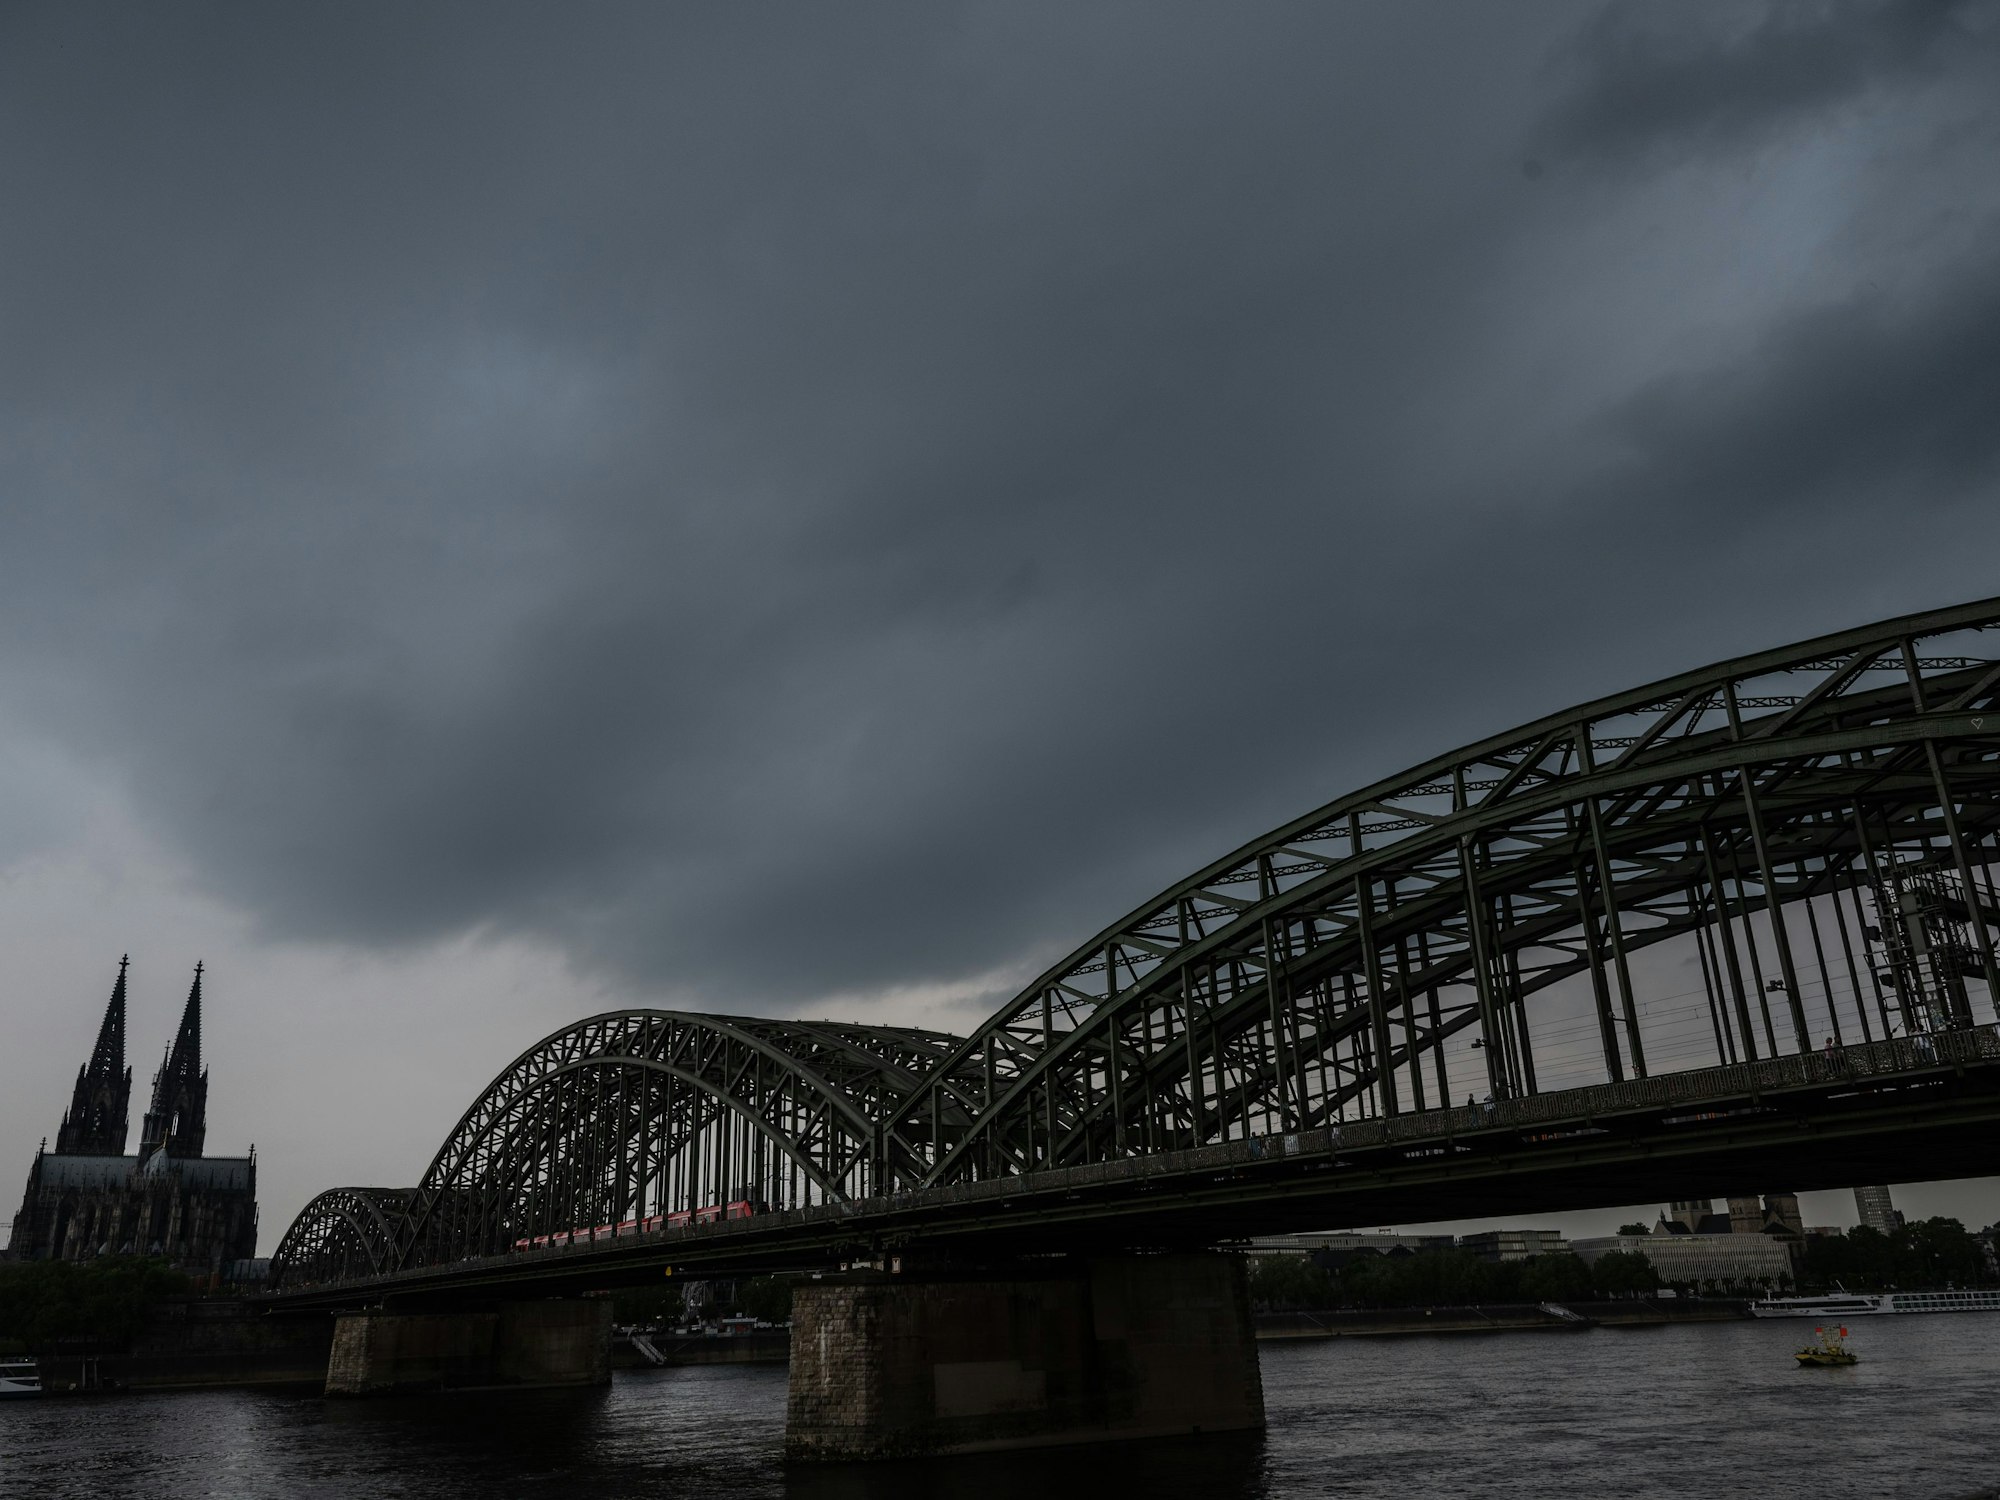 Dunkle Gewitterwolken ziehen über dem Dom auf. Der Deutsche Wetterdienst warnt vor unwetterartigen Gewittern mit Starkregen und Hagel im Rheinland.